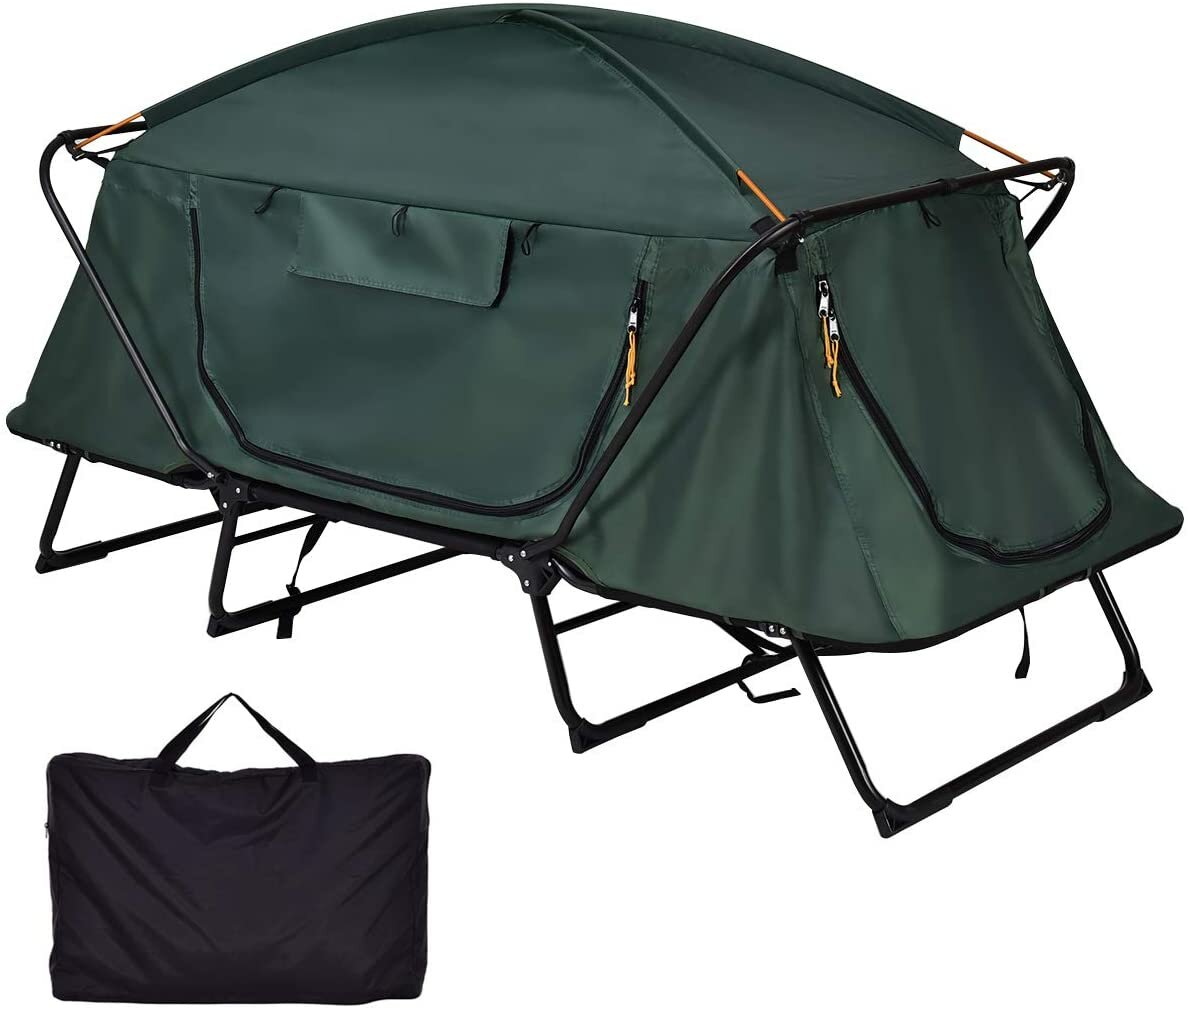 Tent voor 2 personen Off The Ground vouwbaar waterdicht dubbele laag koude bescherming anti-wind zonnescherm koepel luifel wandelen reizen met draagtas.